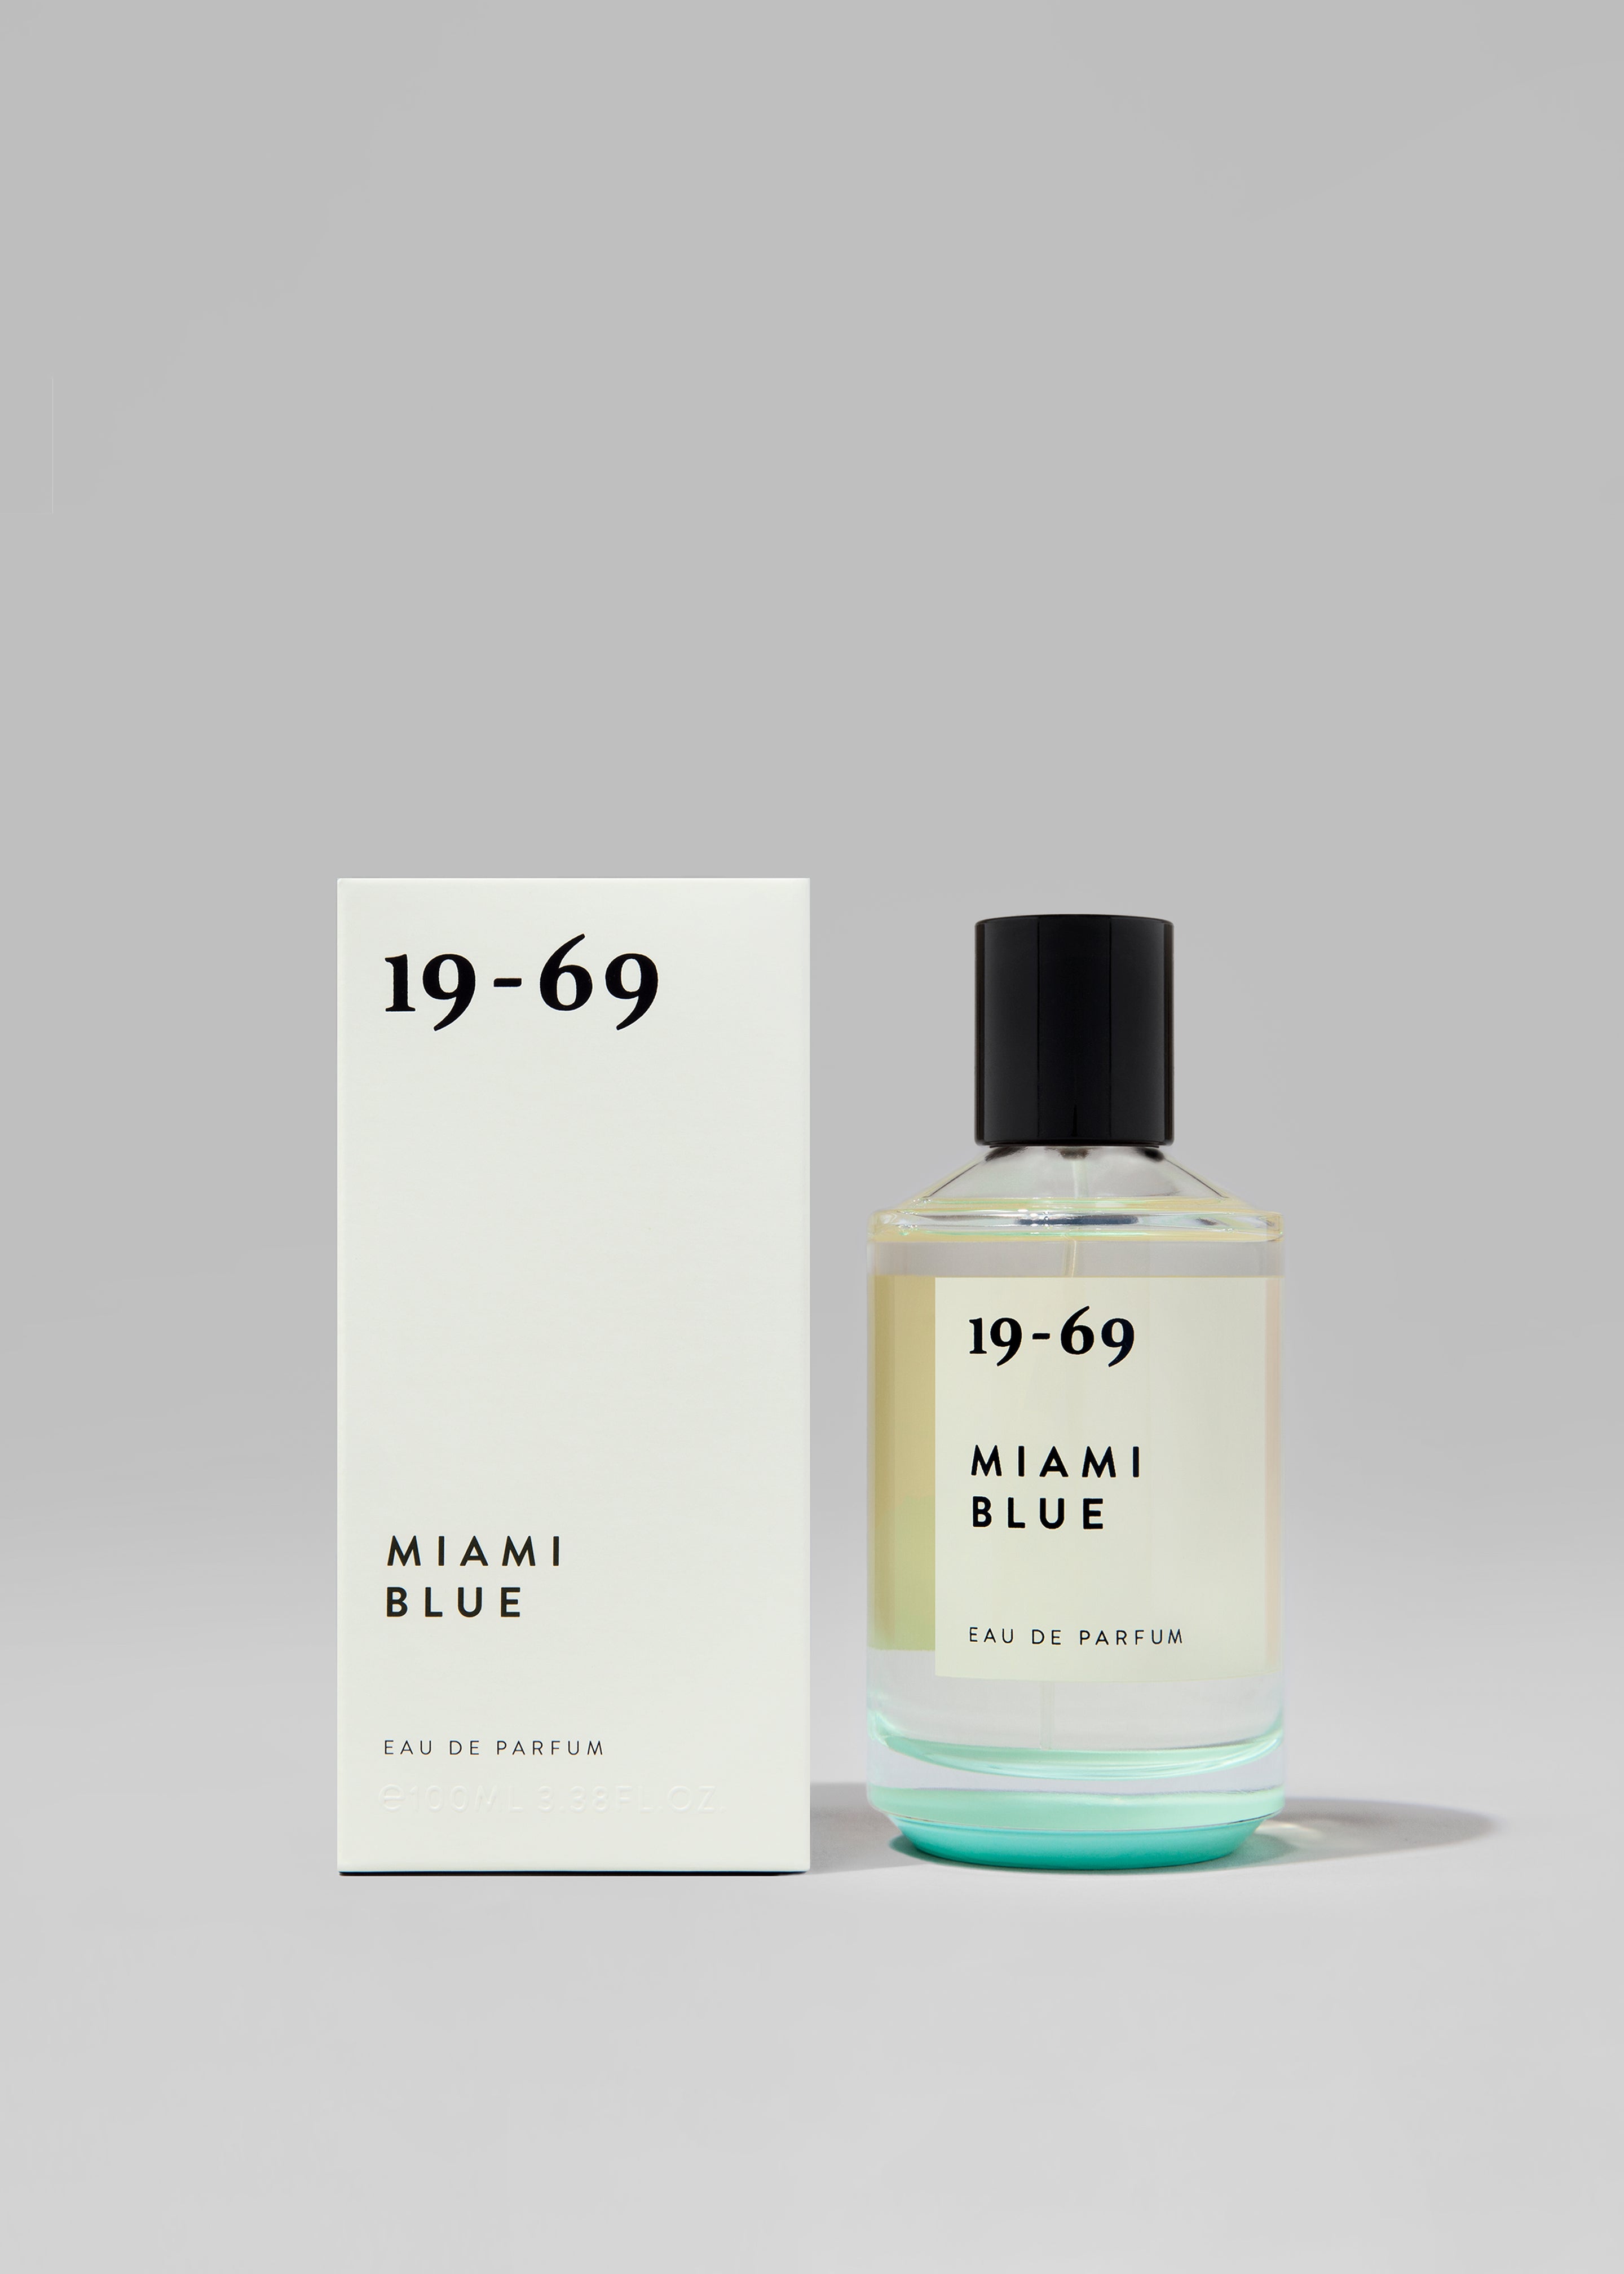 19-69 Miami Blue Eau de Parfum - 2